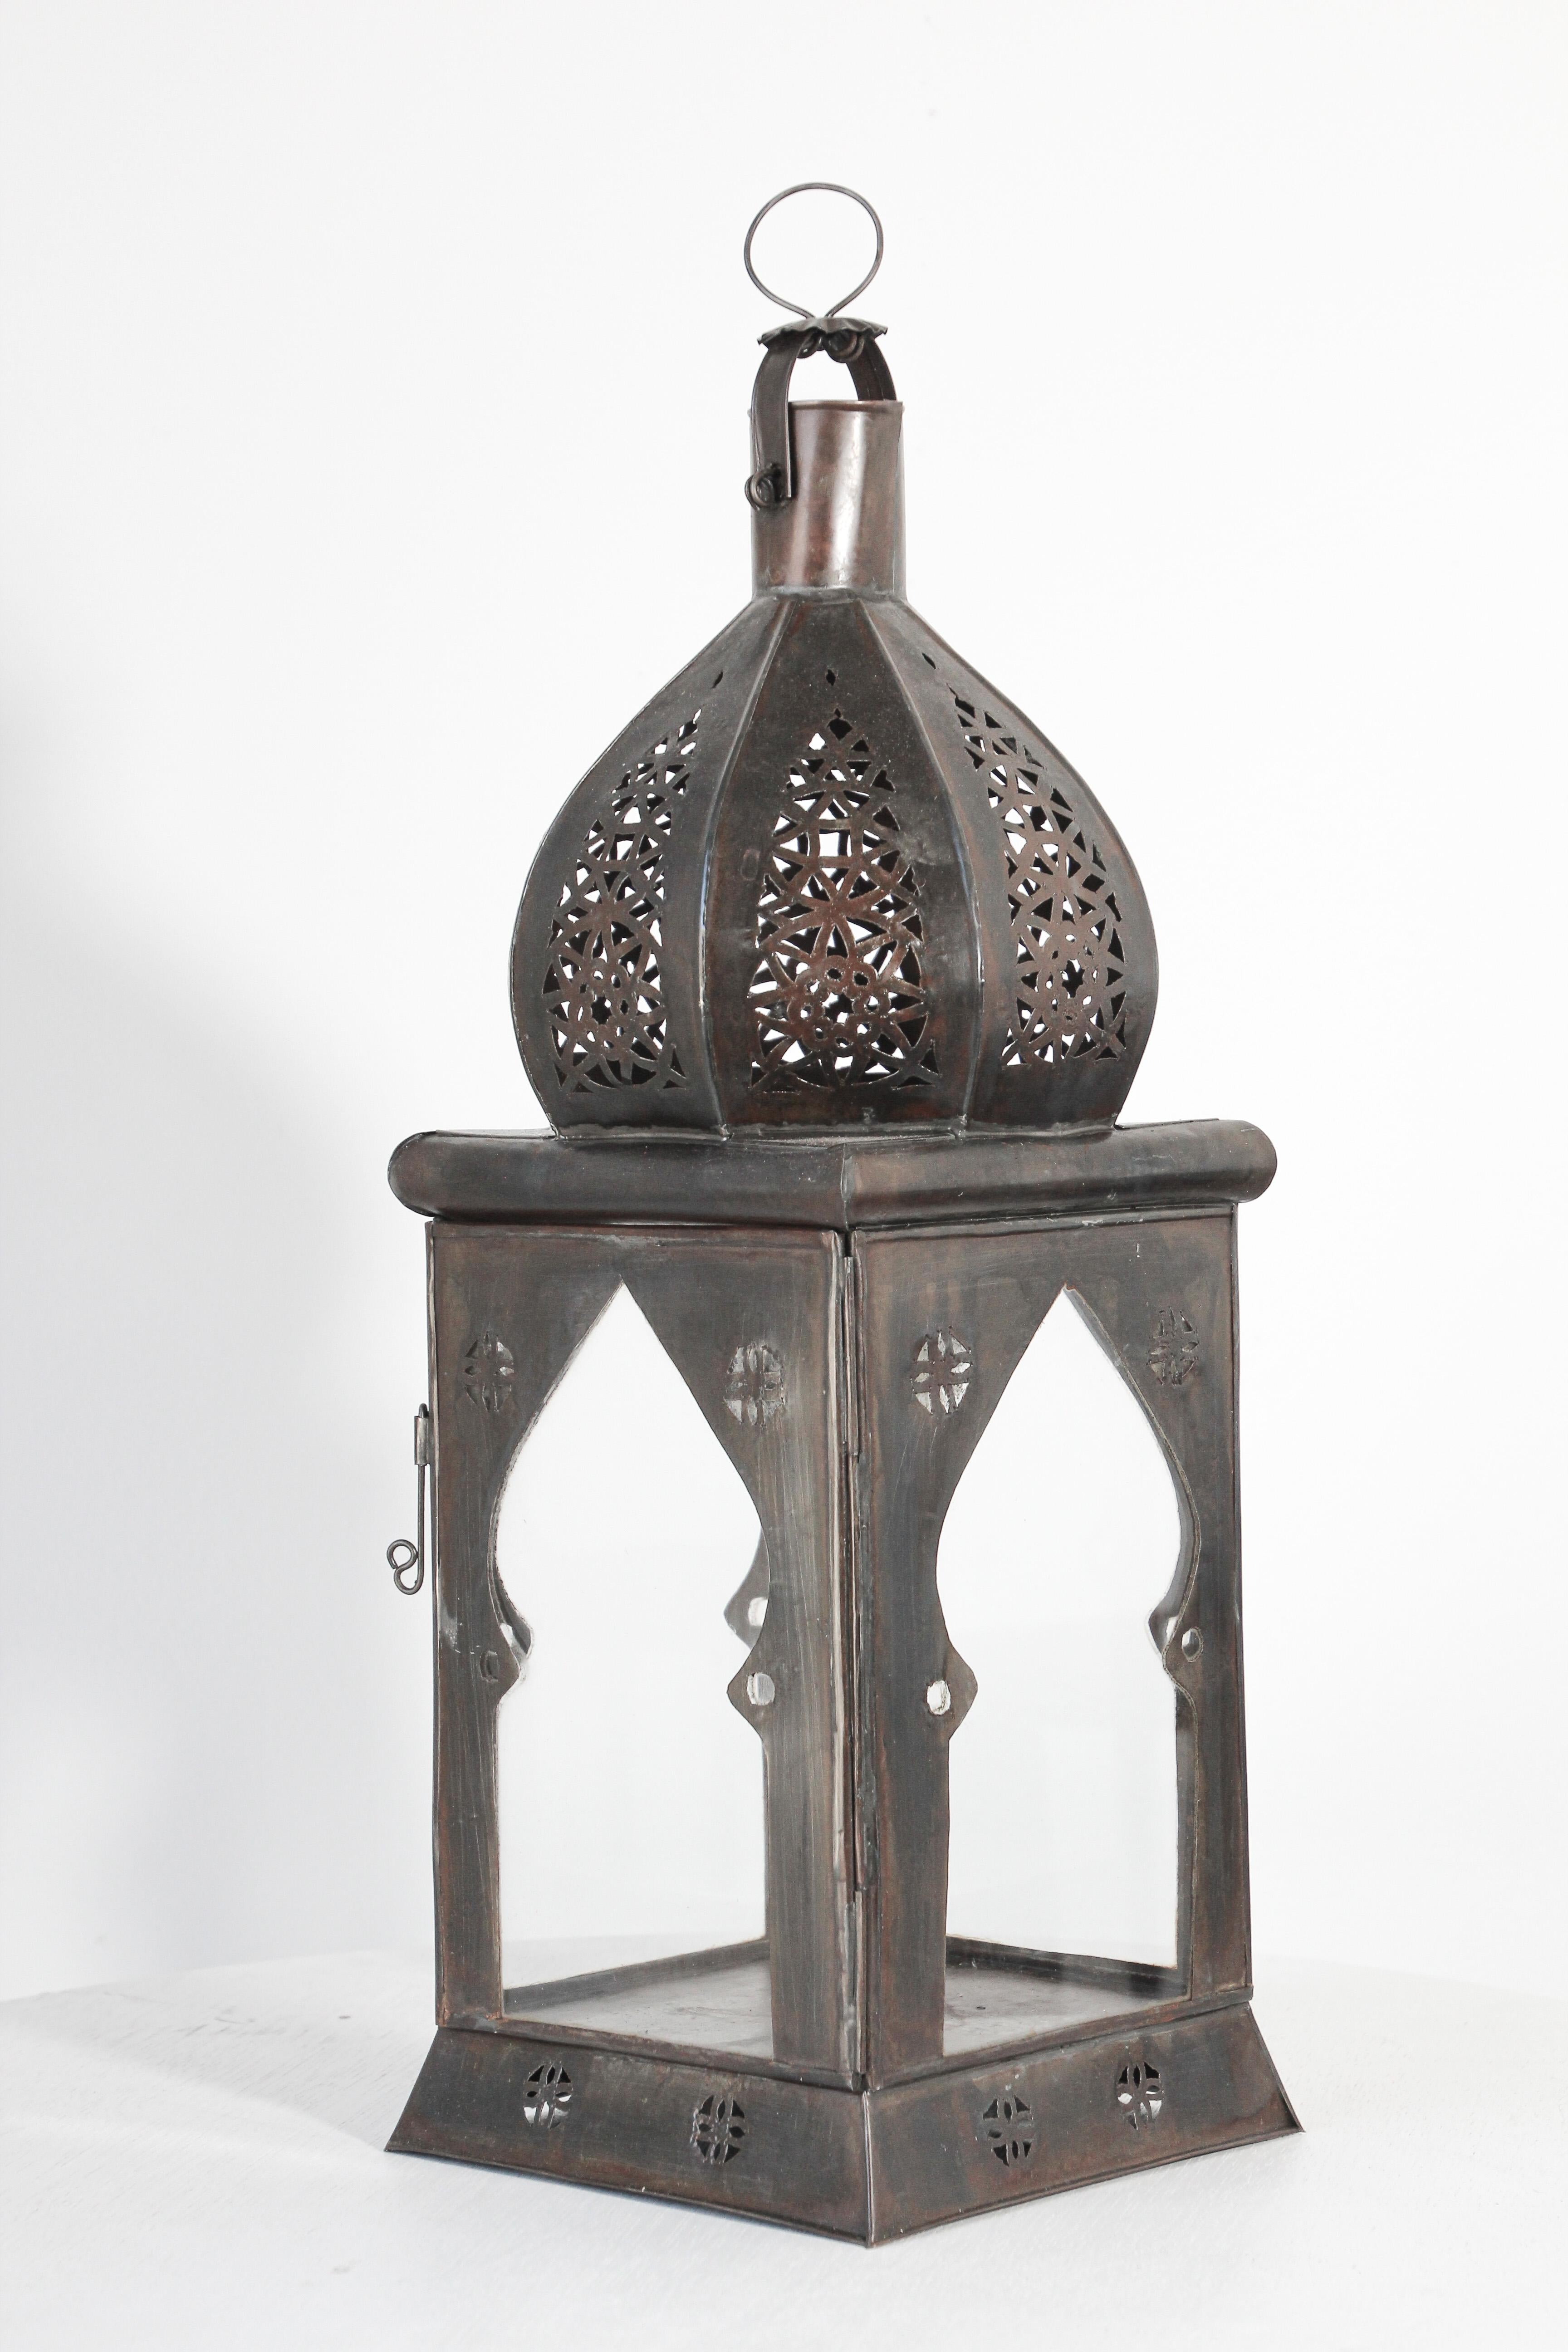 große, handgefertigte marokkanische Laterne aus klarem Glas mit durchbrochenem, filigranem maurischem Metalldekor.
Hurricane-Kerzenlampe mit durchbrochenem Metalldesign und klarem Glas.
Es gibt eine kleine Tür, durch die man ins Innere gelangt.
Es